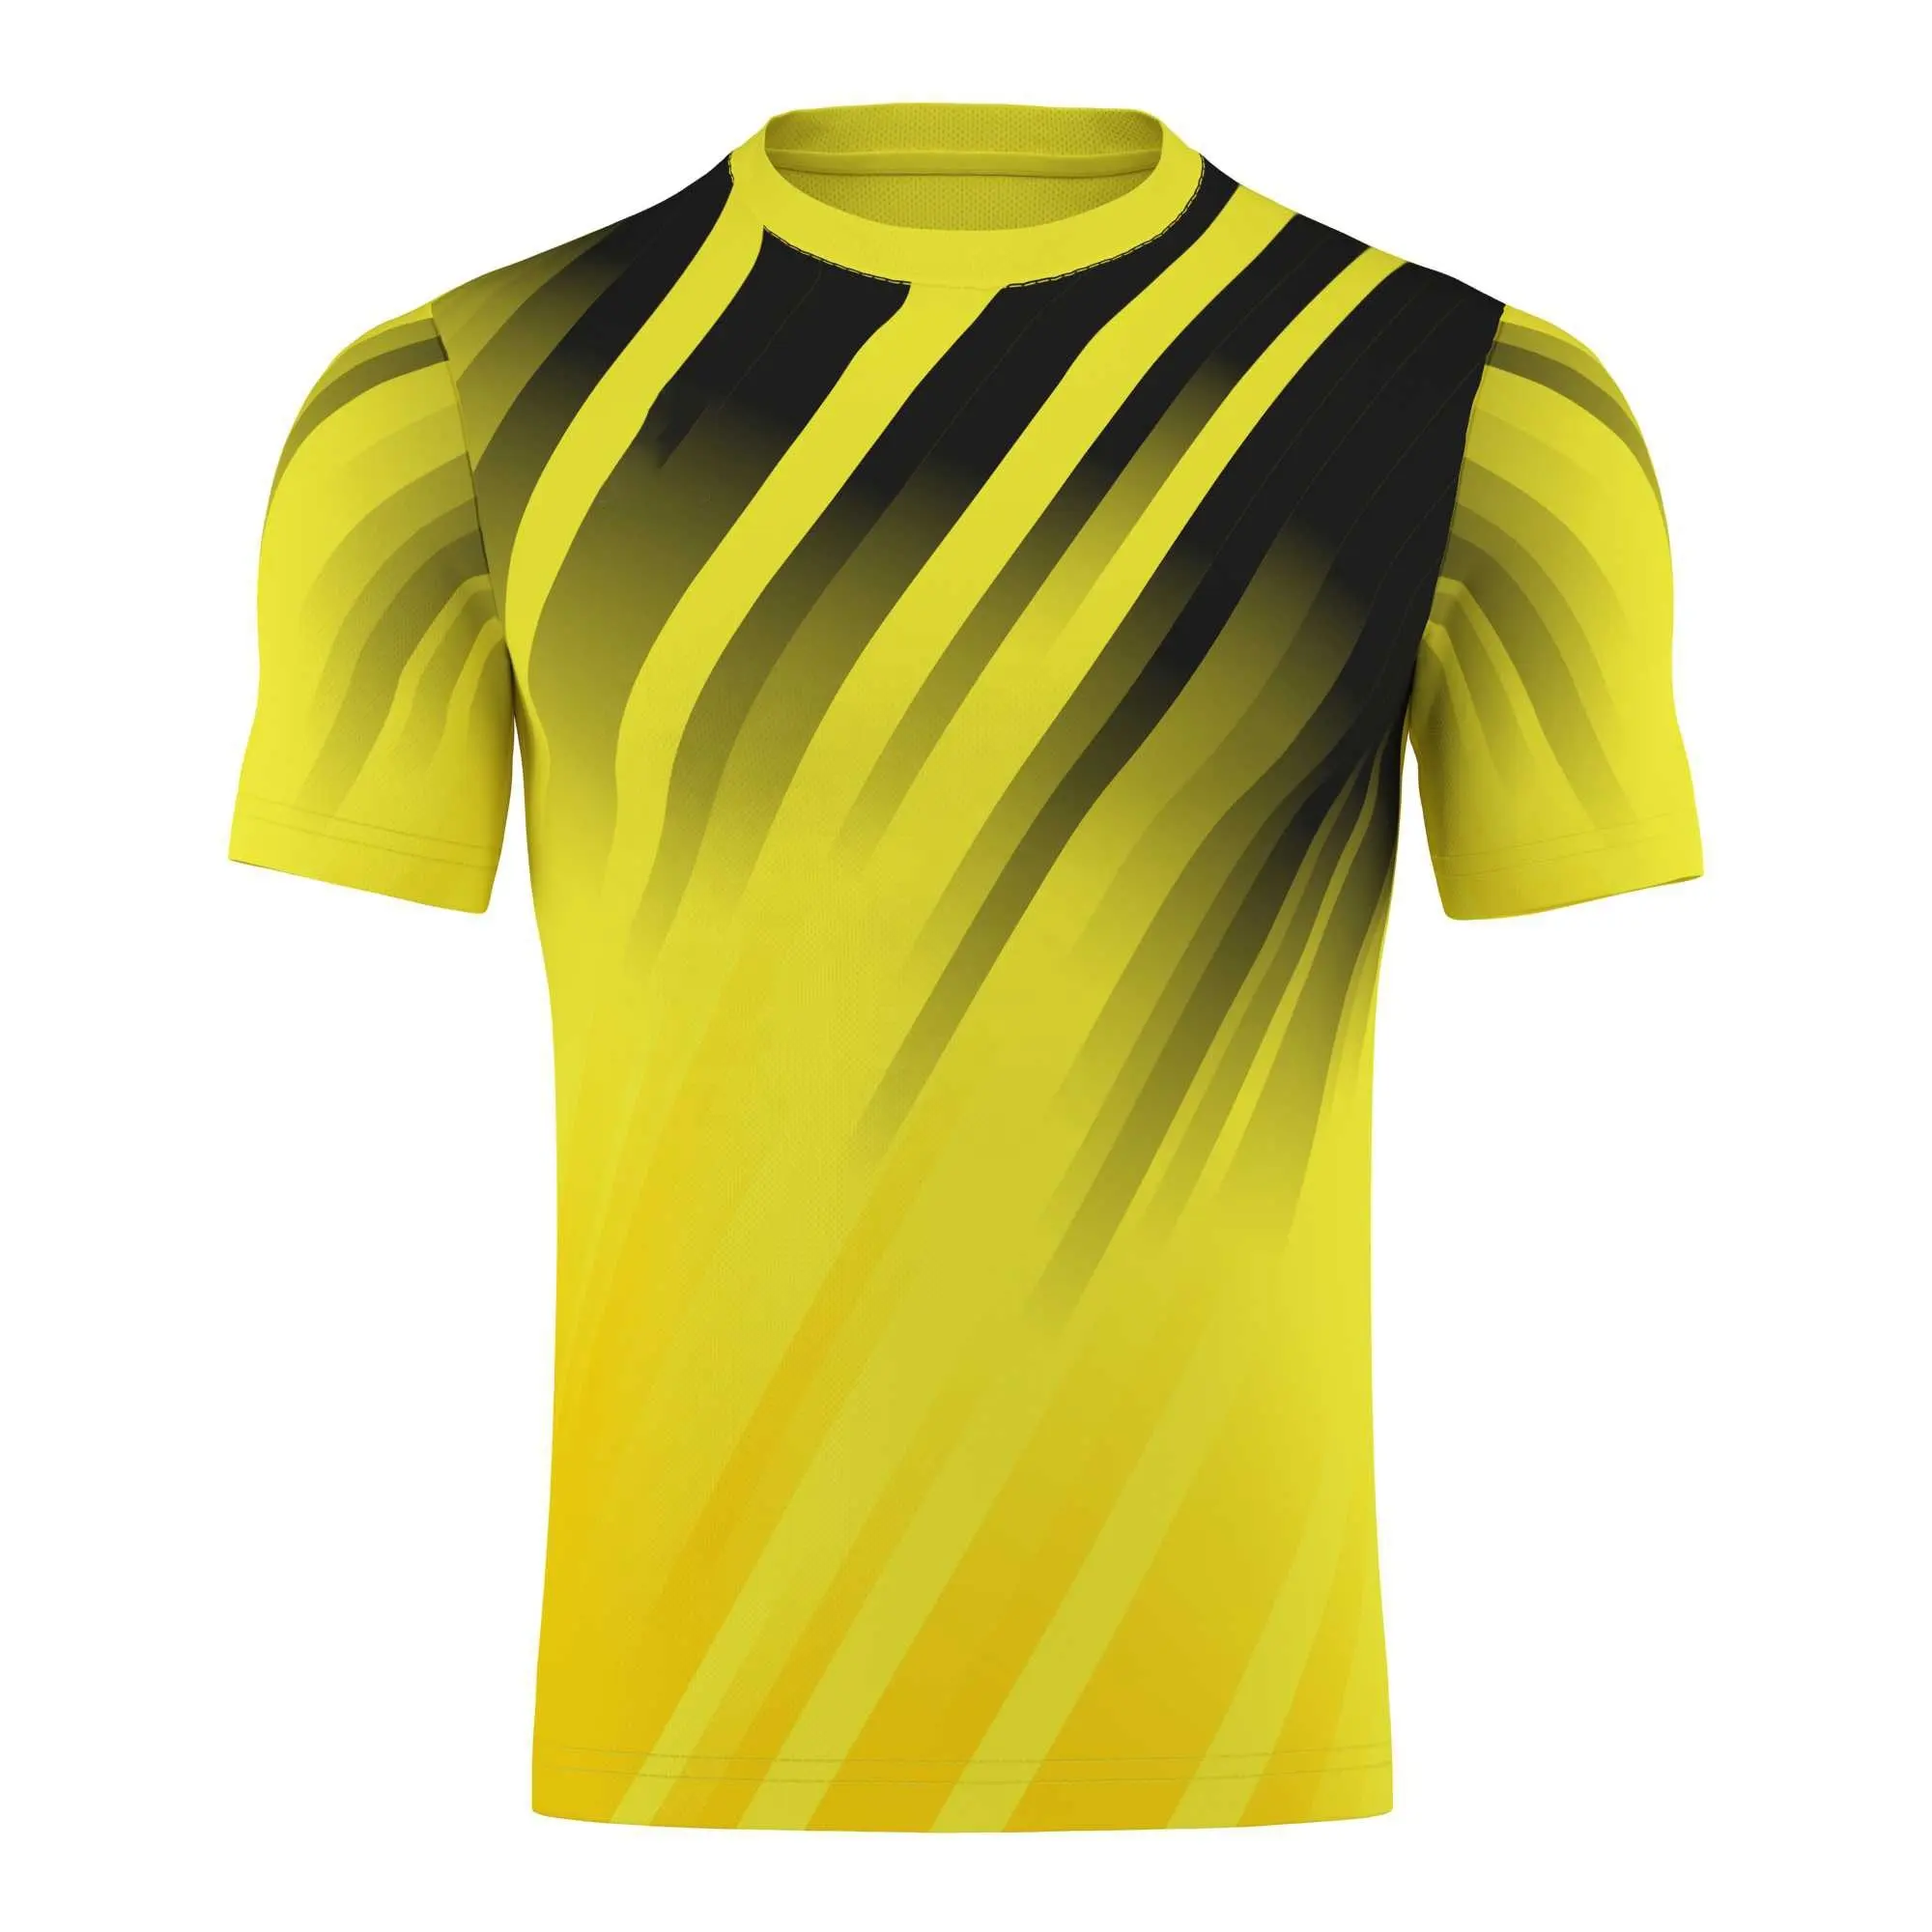 उच्च गुणवत्ता है मेरी प्लेयर प्रशंसक फुटबॉल फुटबॉल टी शर्ट यूनिसेक्स प्रचार टीशर्ट पॉलिएस्टर/कपास फुटबॉल शर्ट टीम जर्मनी